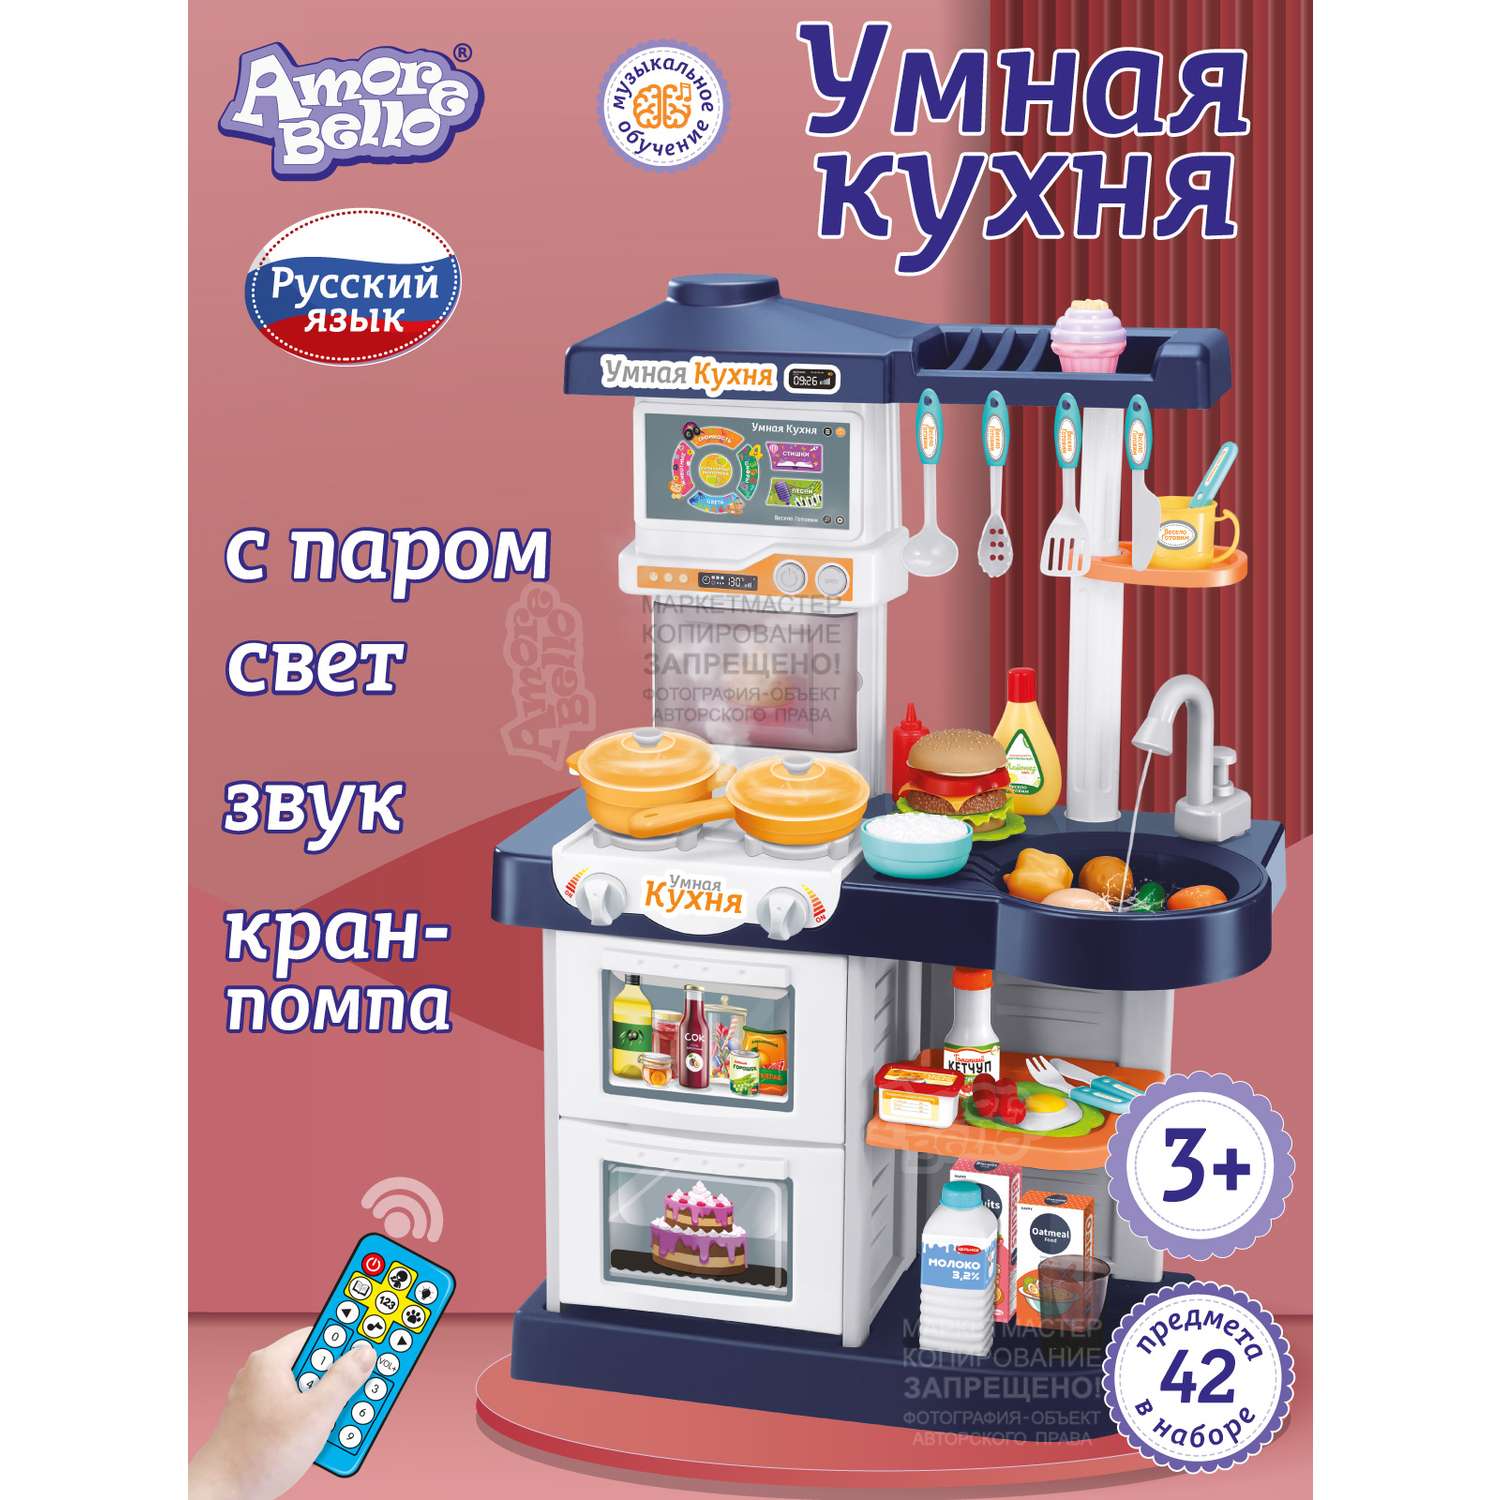 Игровой набор детский AMORE BELLO Умная Кухня с пультом с паром и кран с водой игрушечные продукты и посуда 42 JB0209162 - фото 1